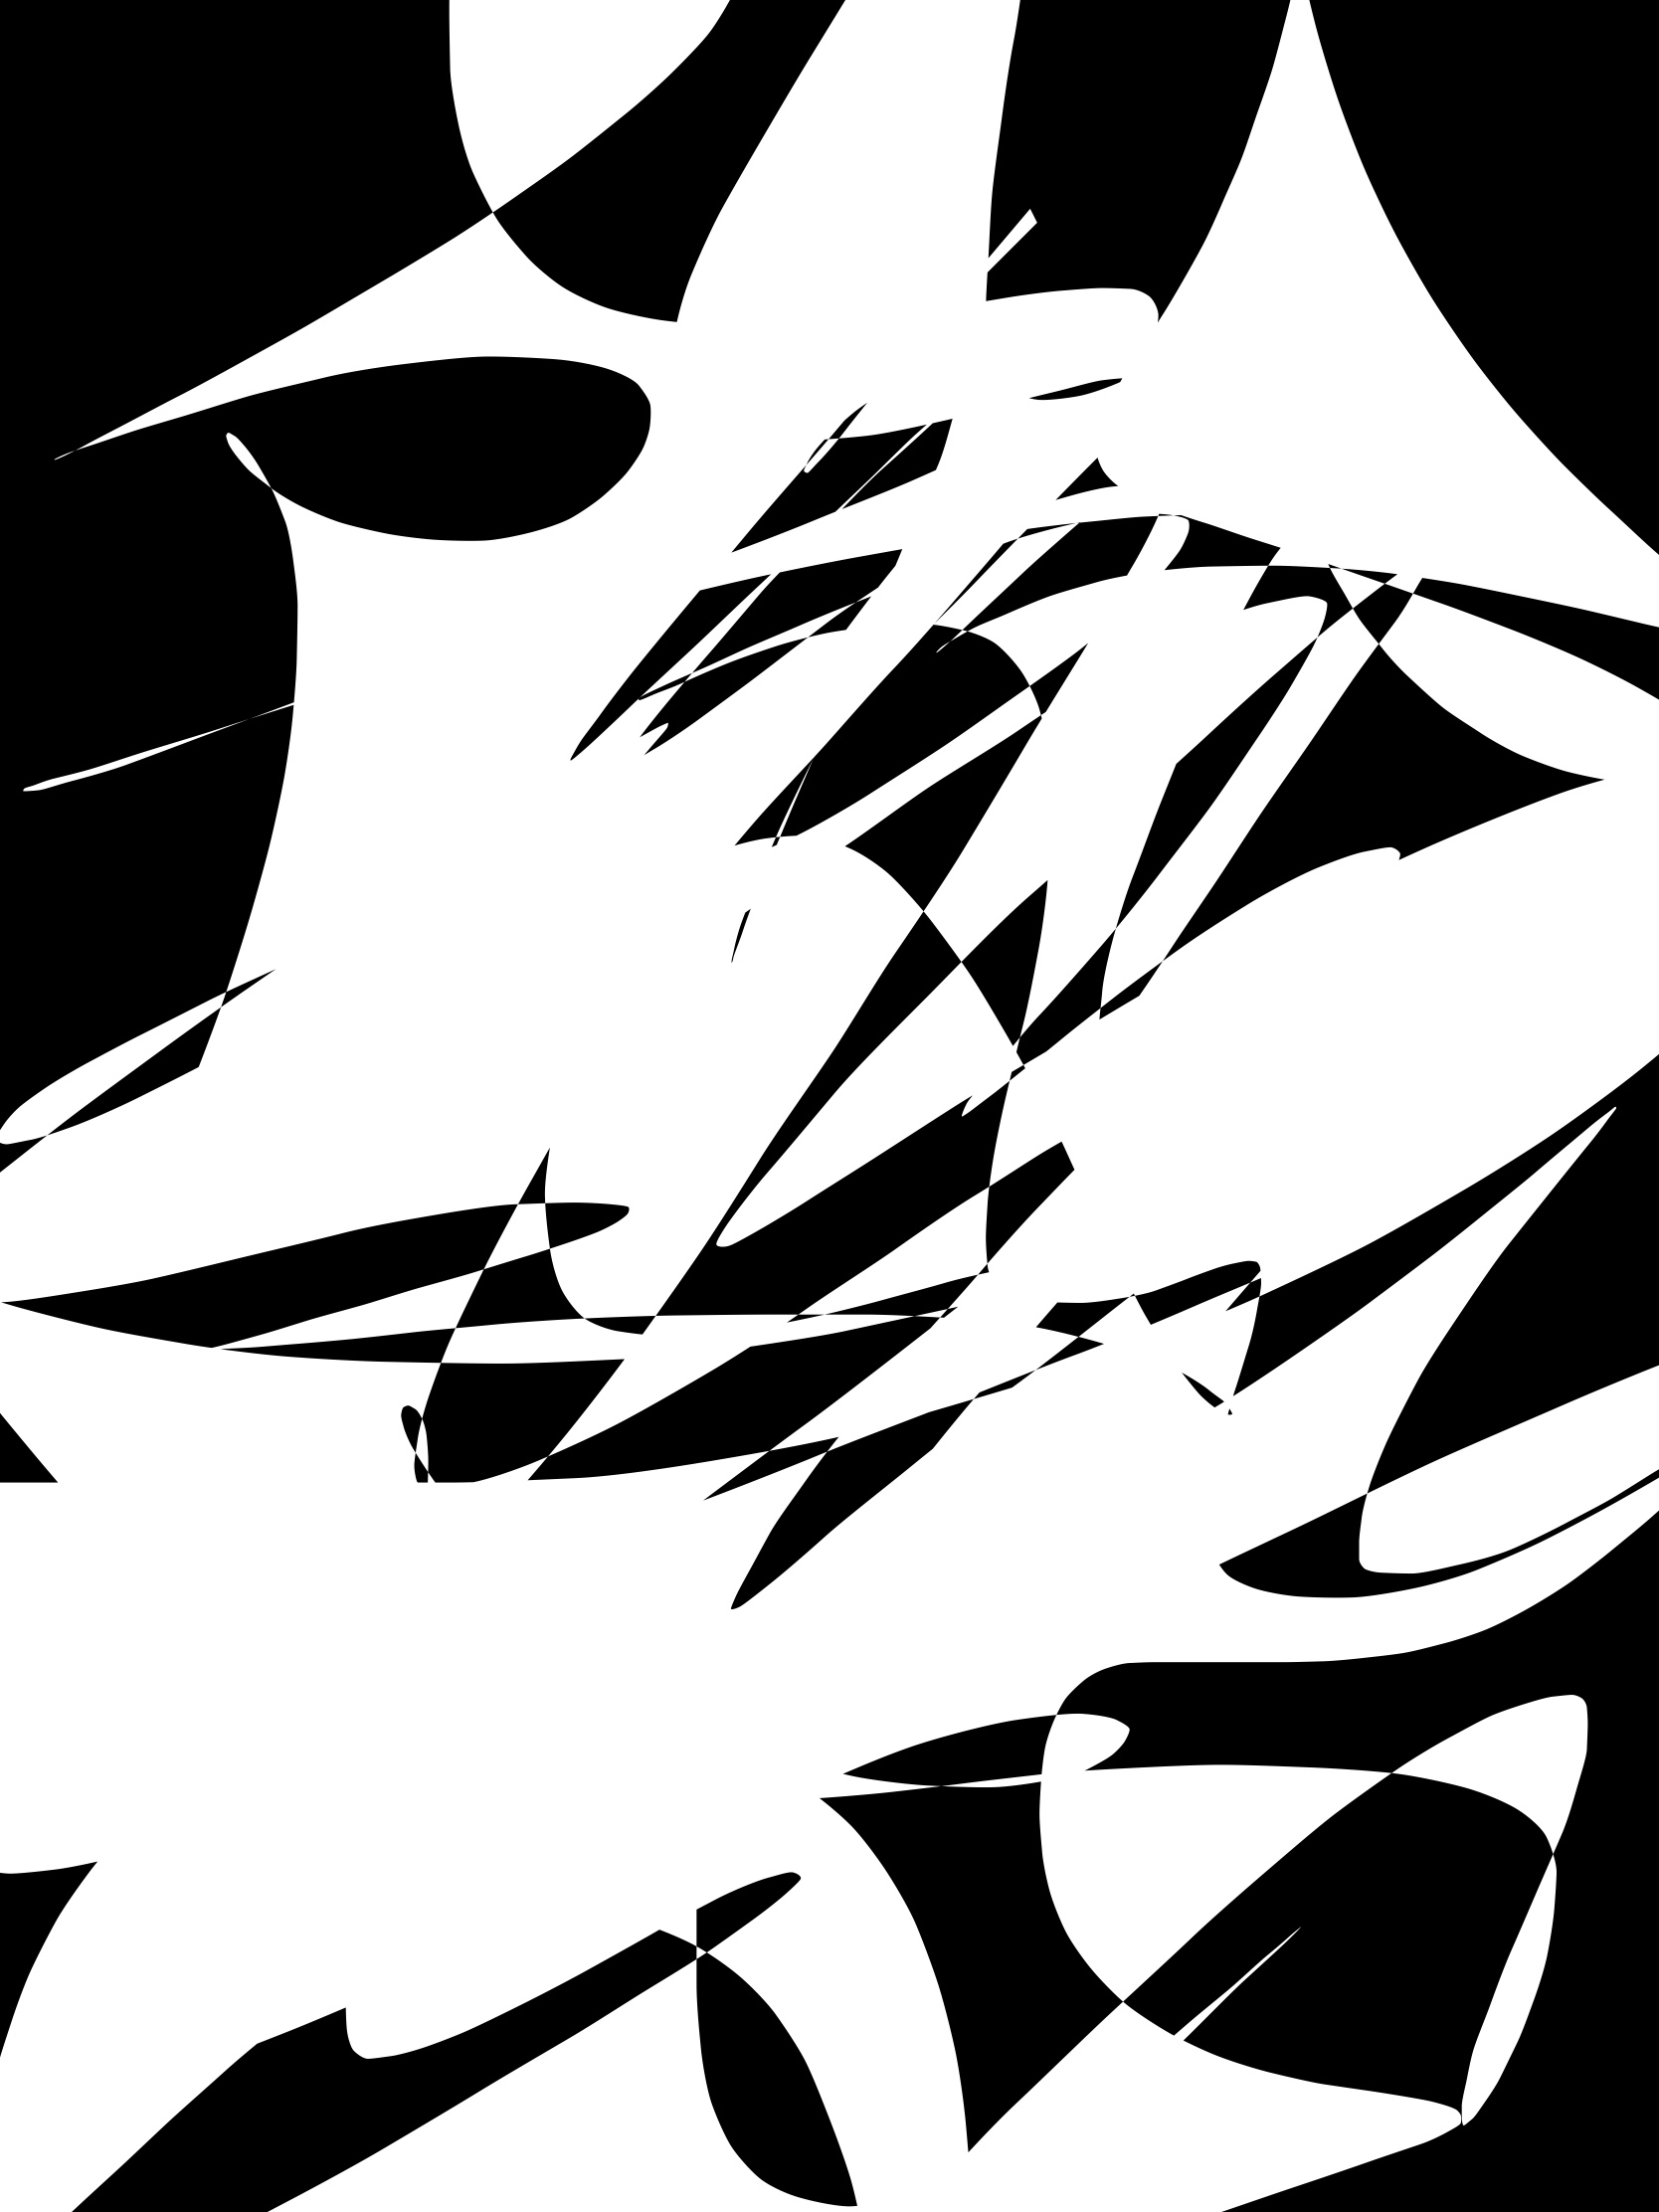 Black white abstract ERIC KIM